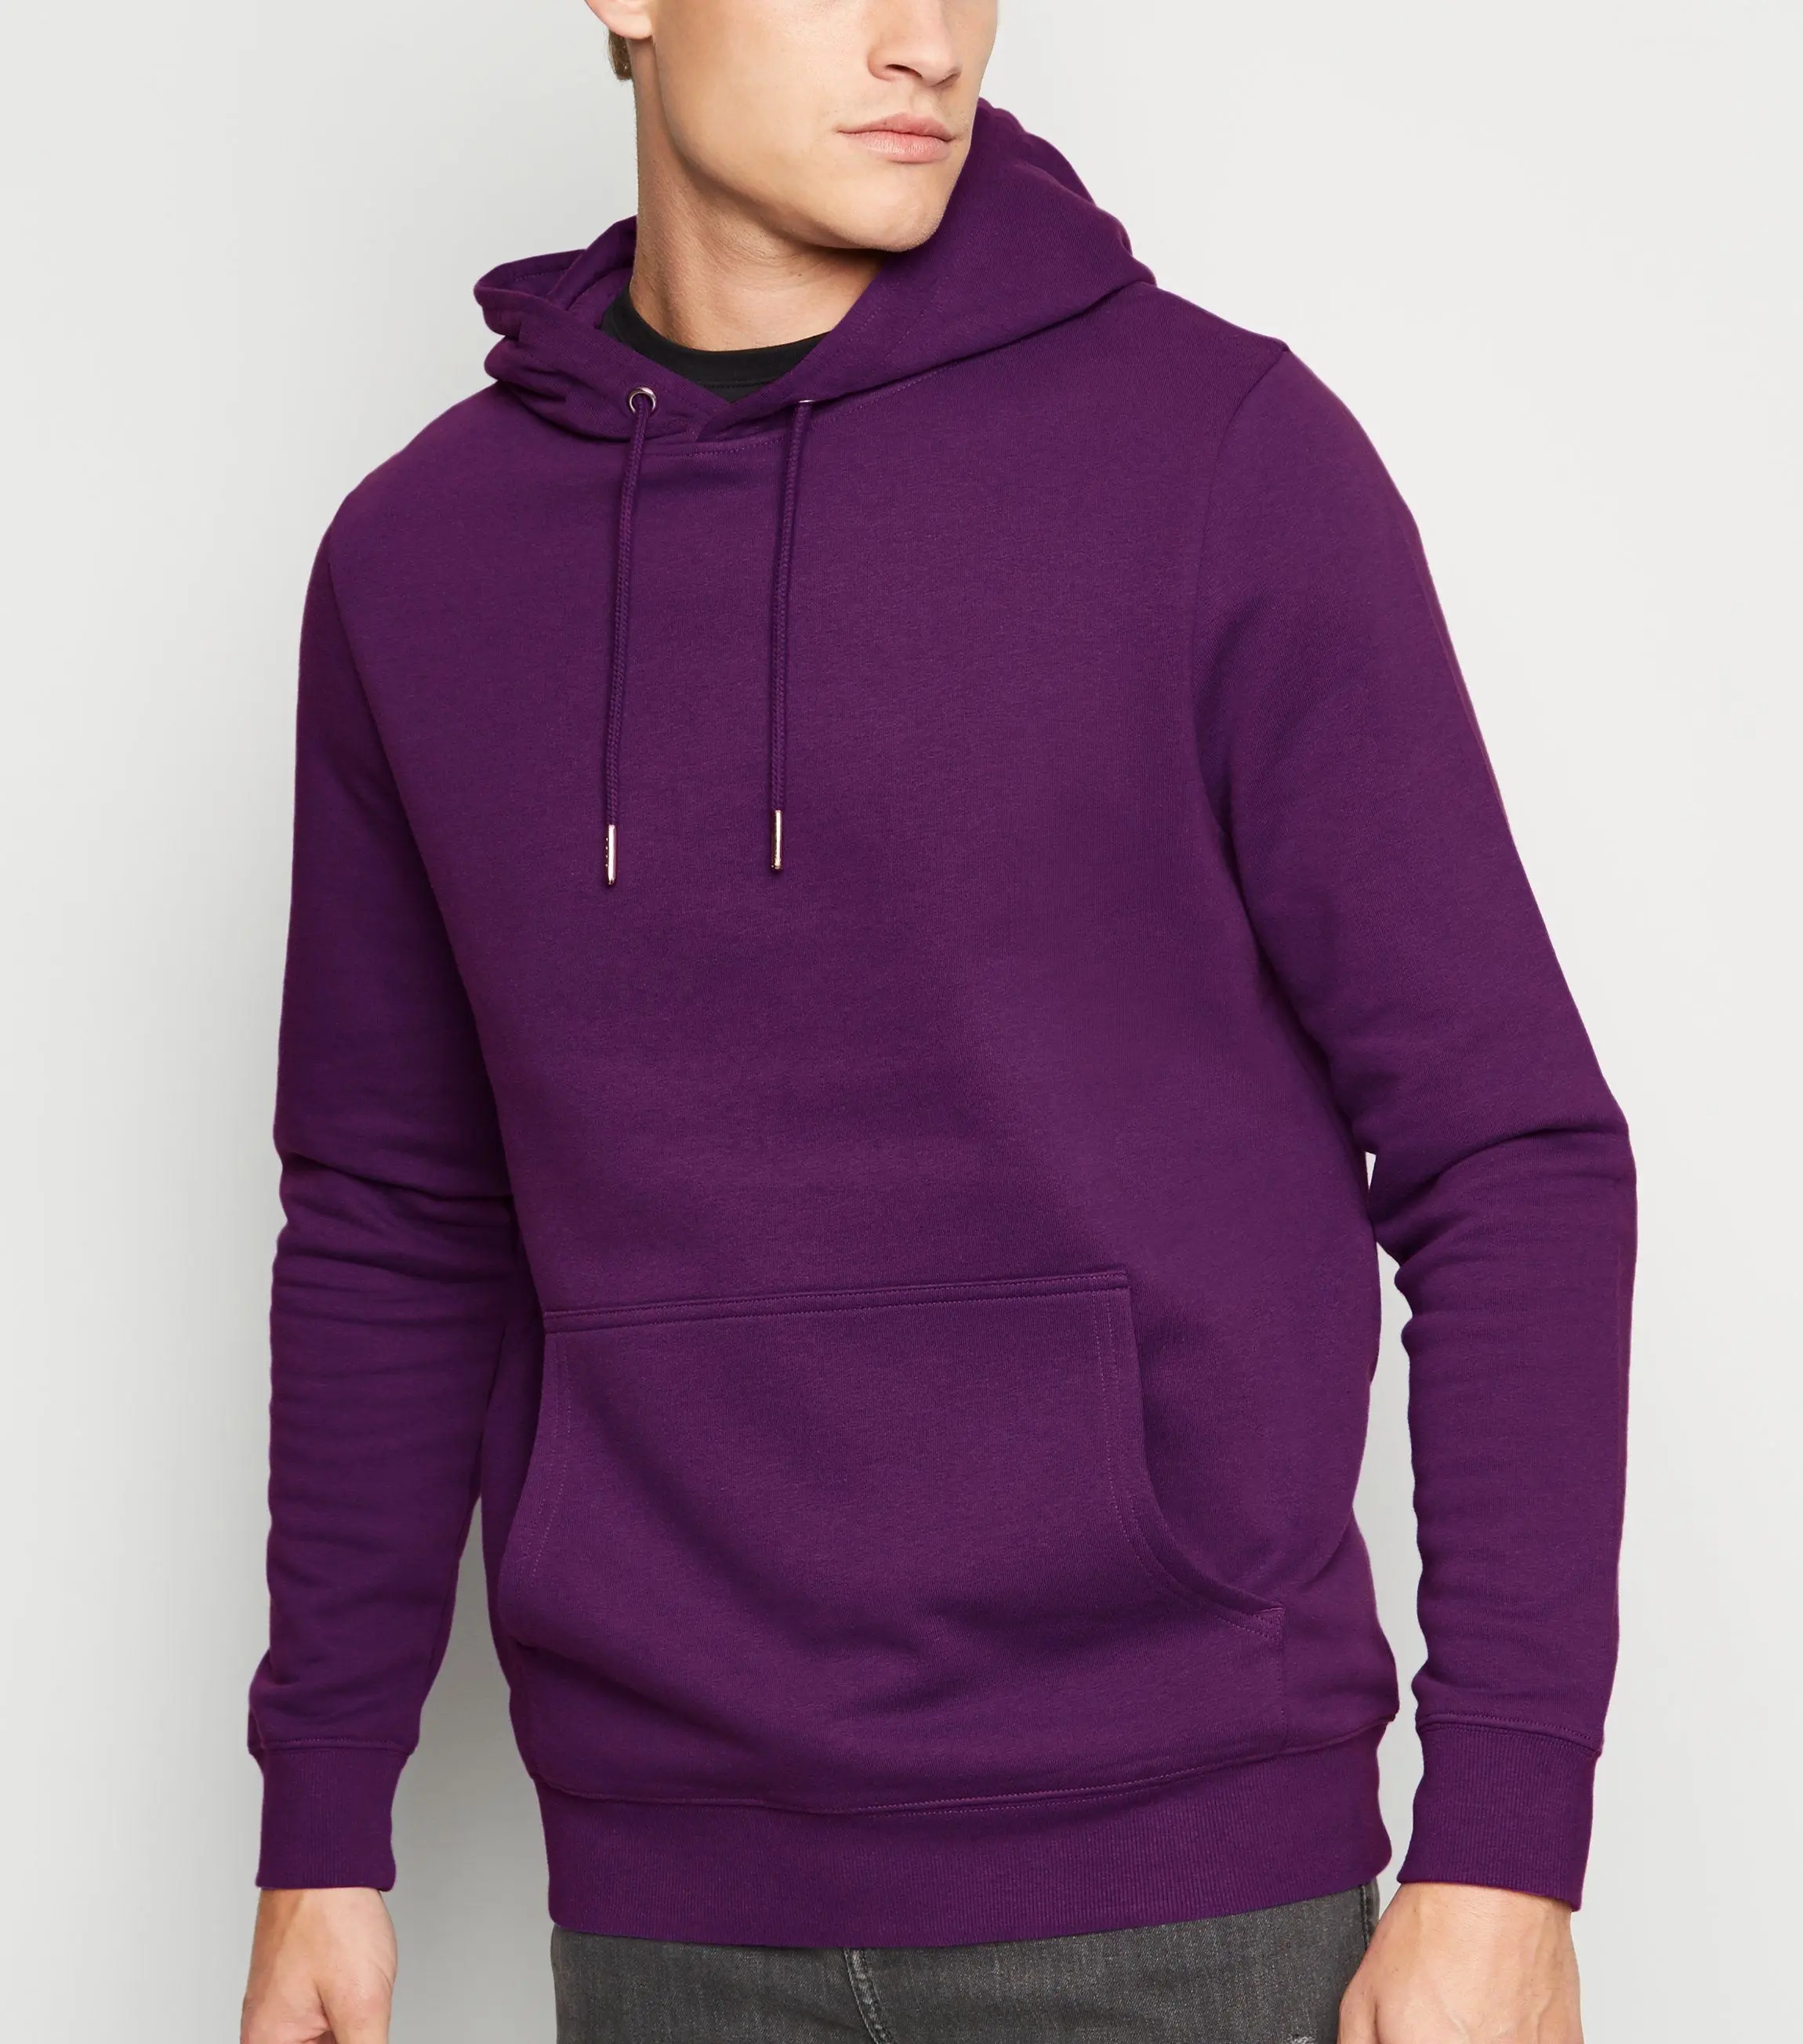 Color púrpura Precio de fábrica Logotipo personalizado Sudadera con capucha en blanco para hombres Sudadera con capucha de manga completa de ajuste regular para hombres